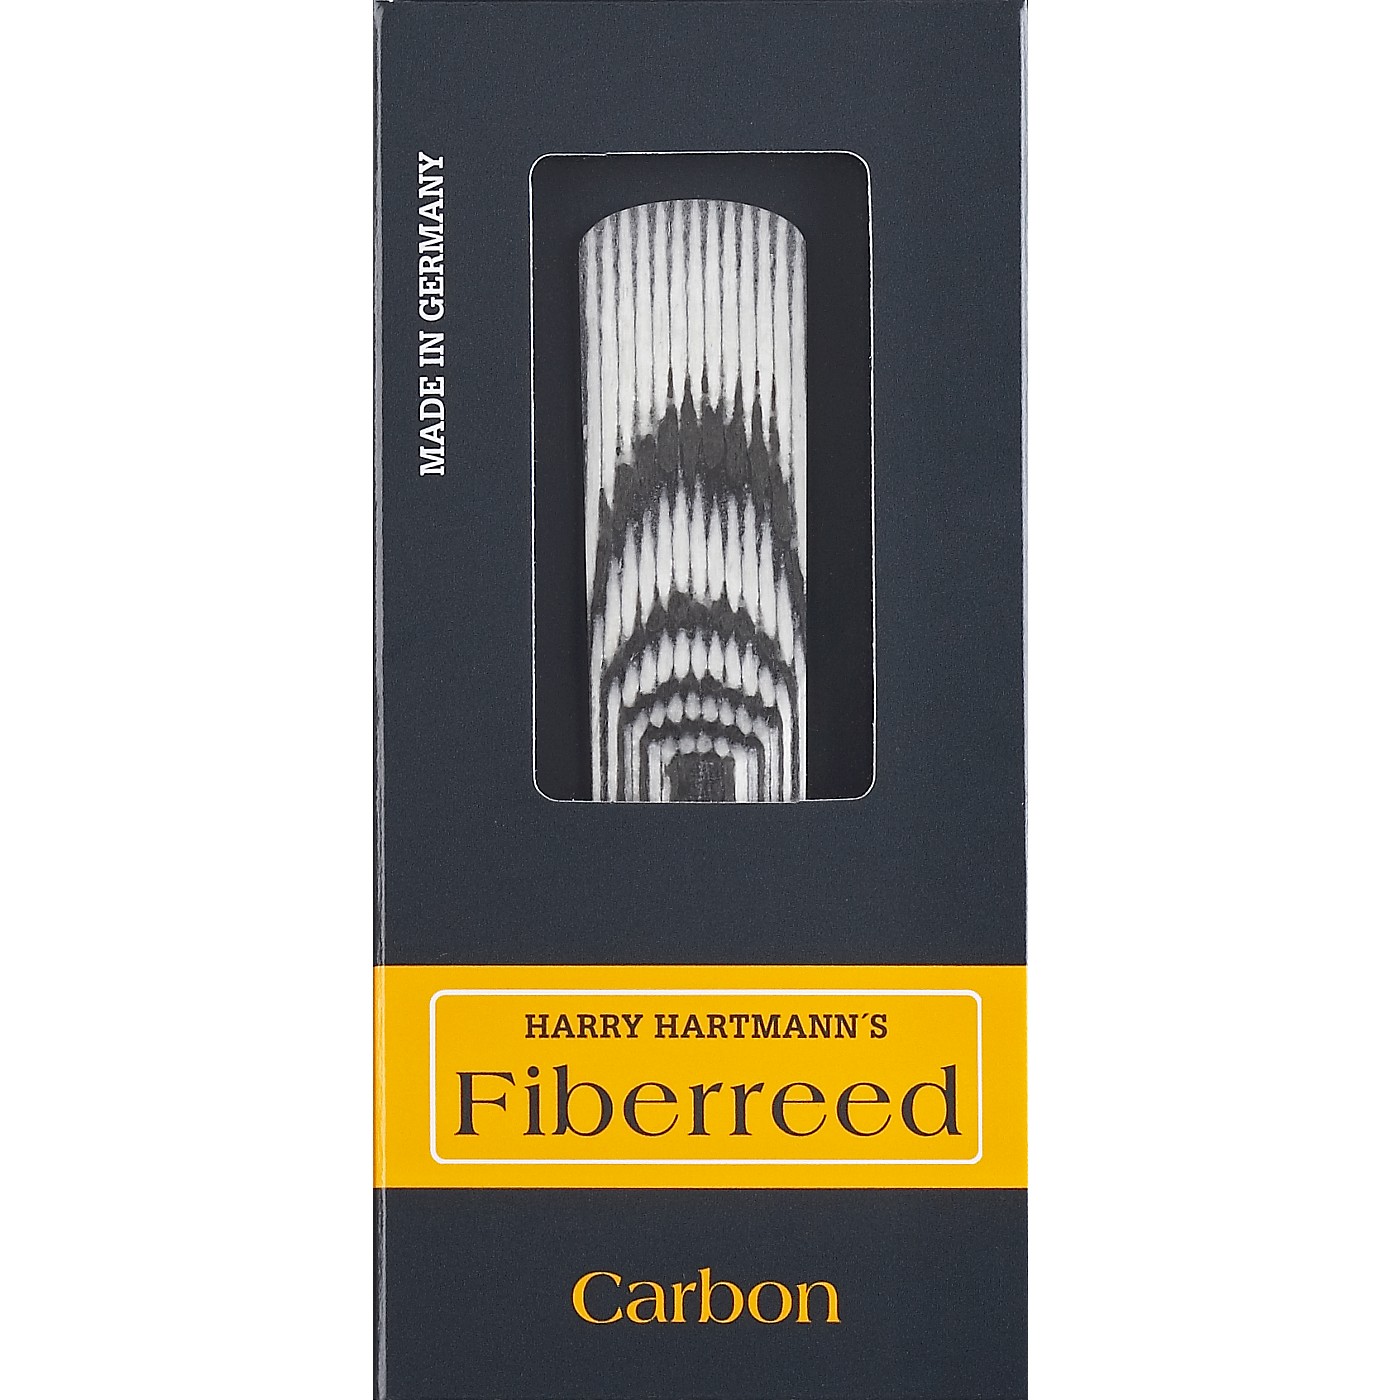 Fiberreed Reed Baritone Saxophone Carbon Onyx Size MS 